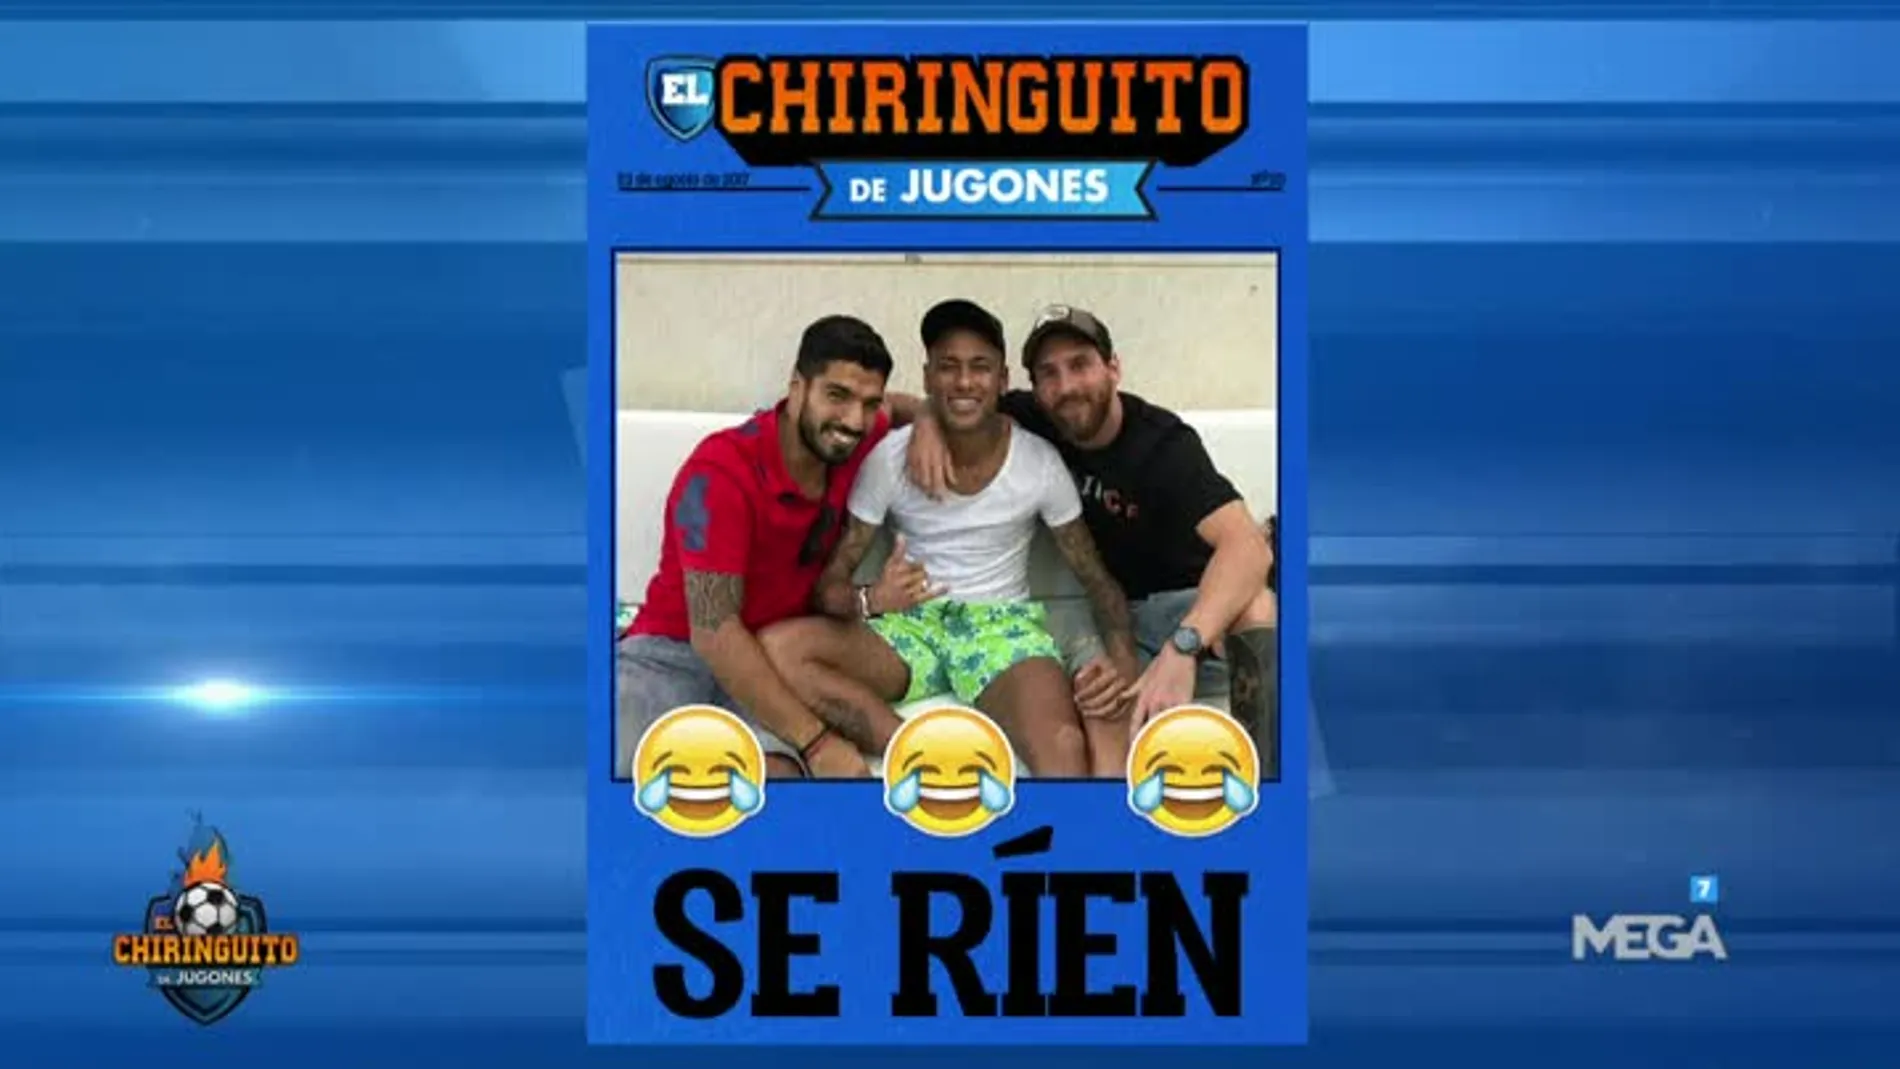 Se ríen, portada El Chiringuito